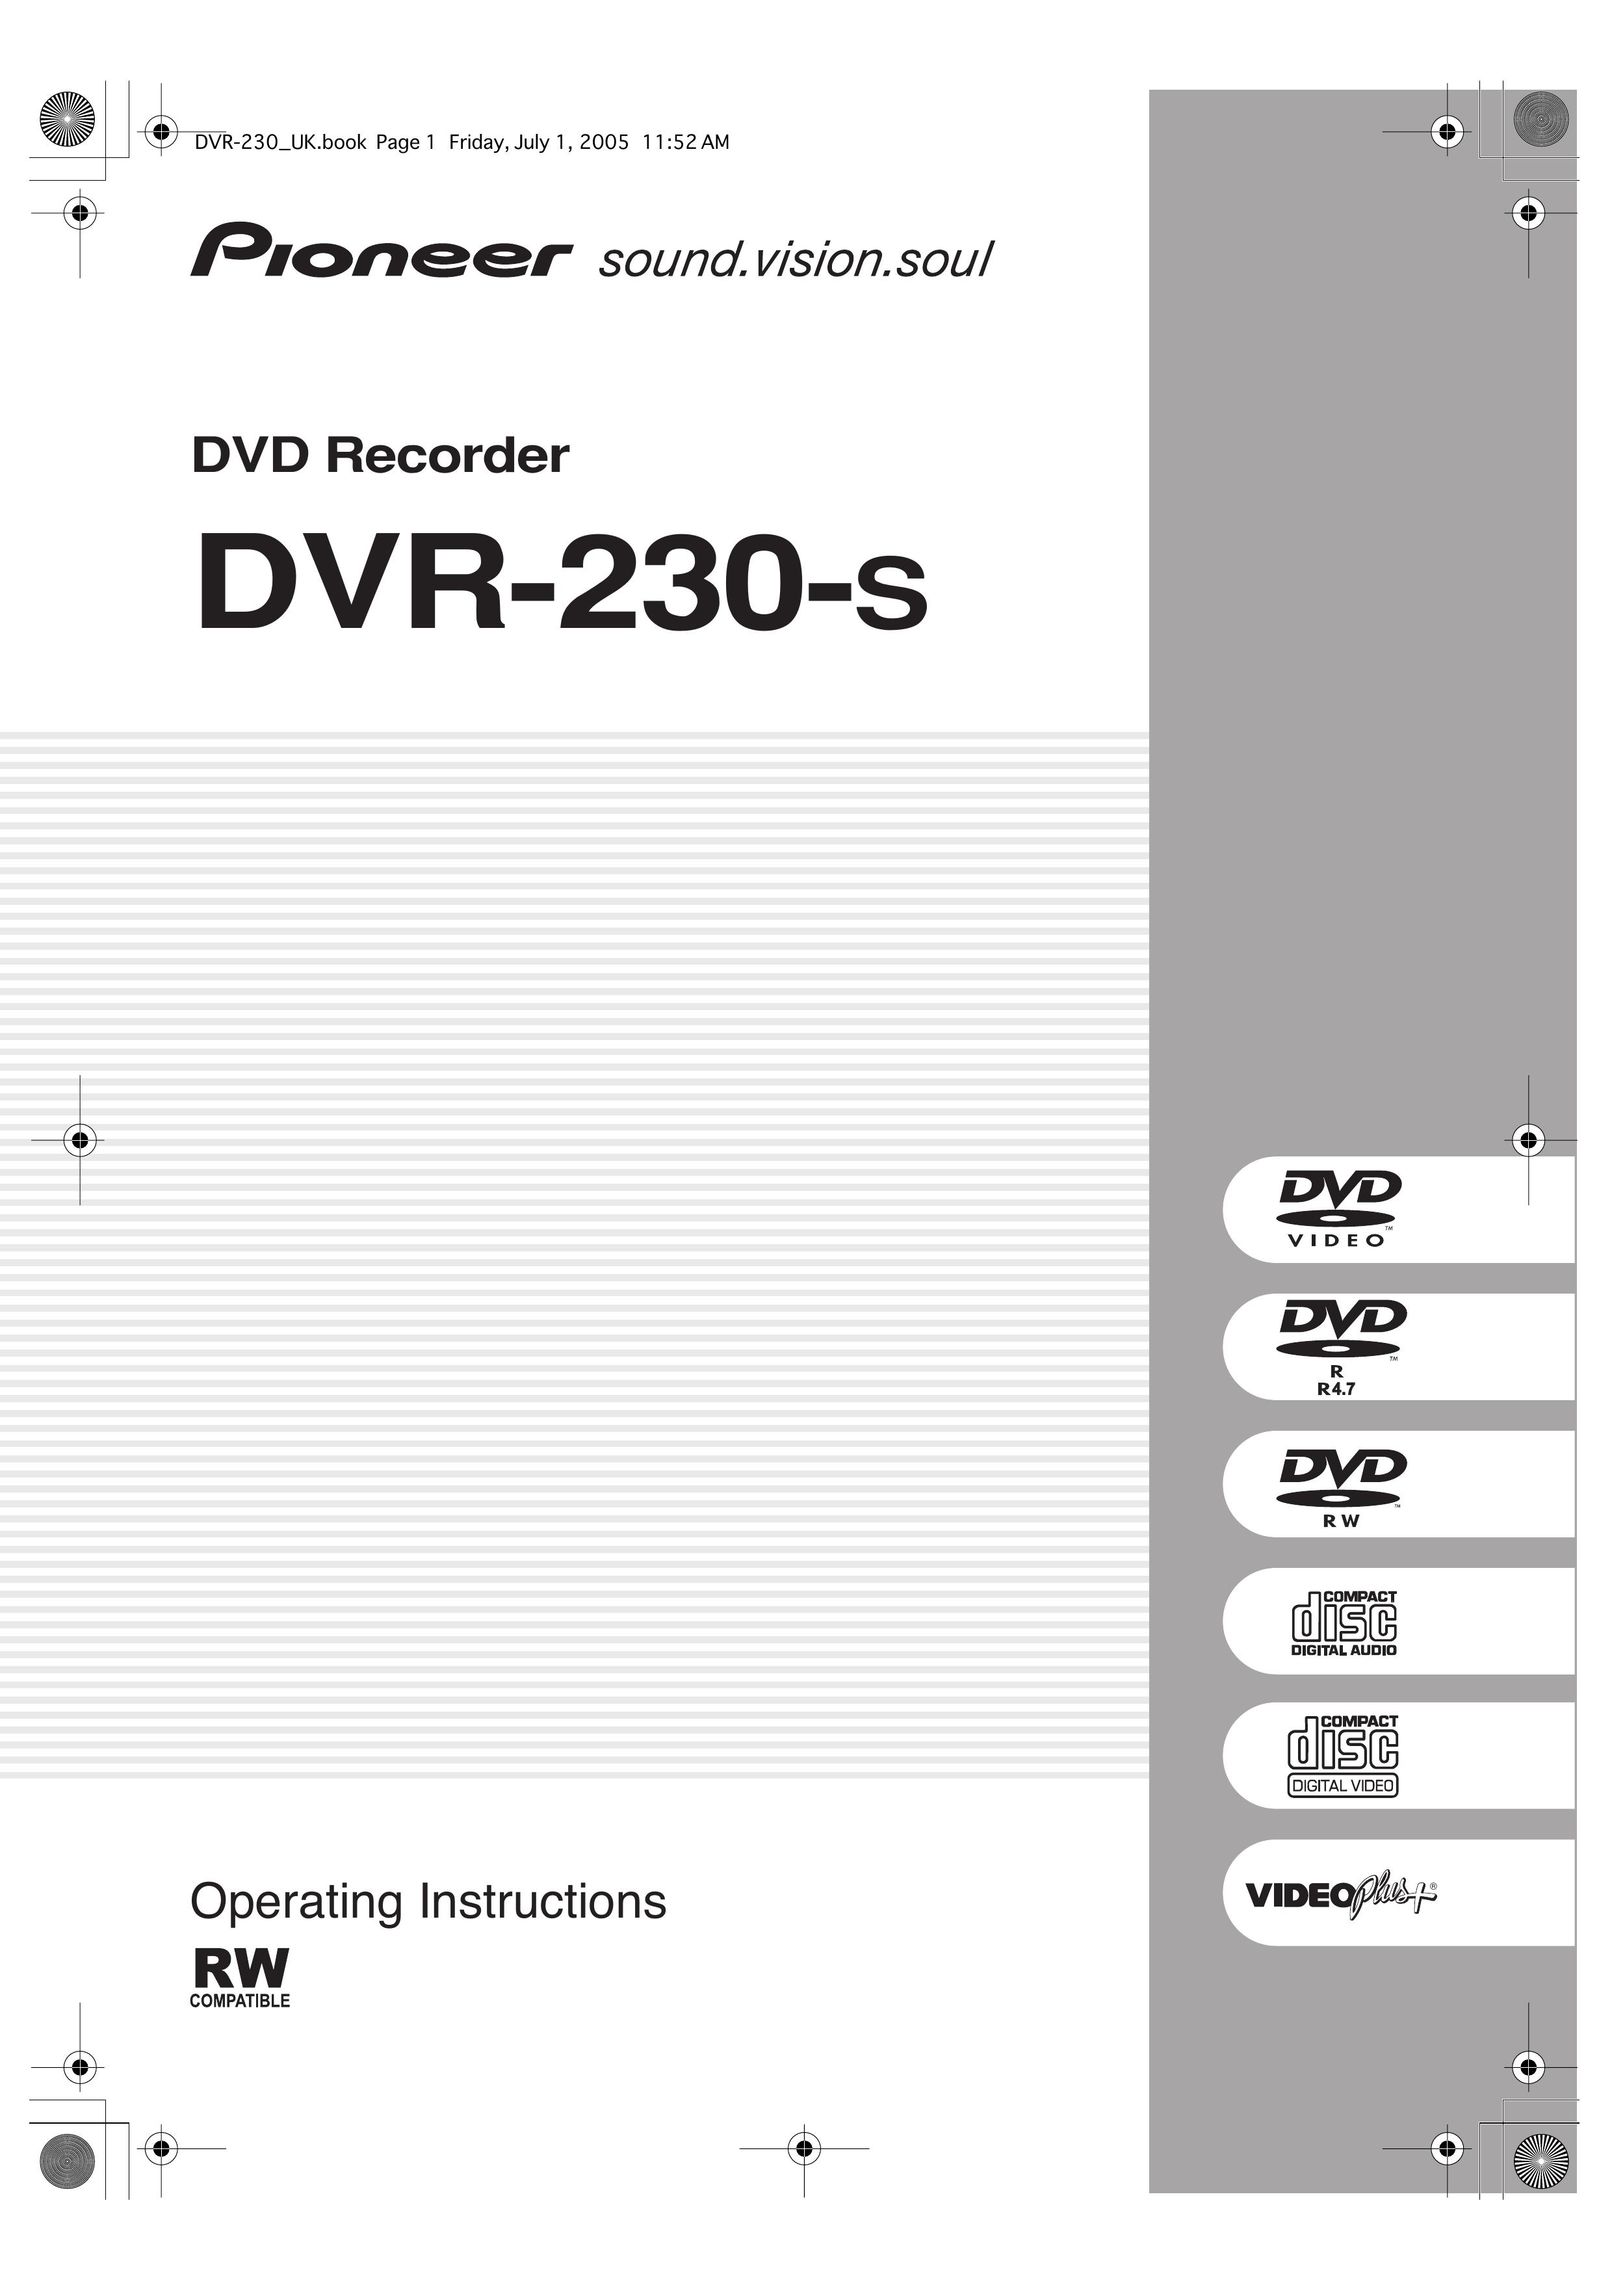 Pioneer DVR-230-s DVR User Manual